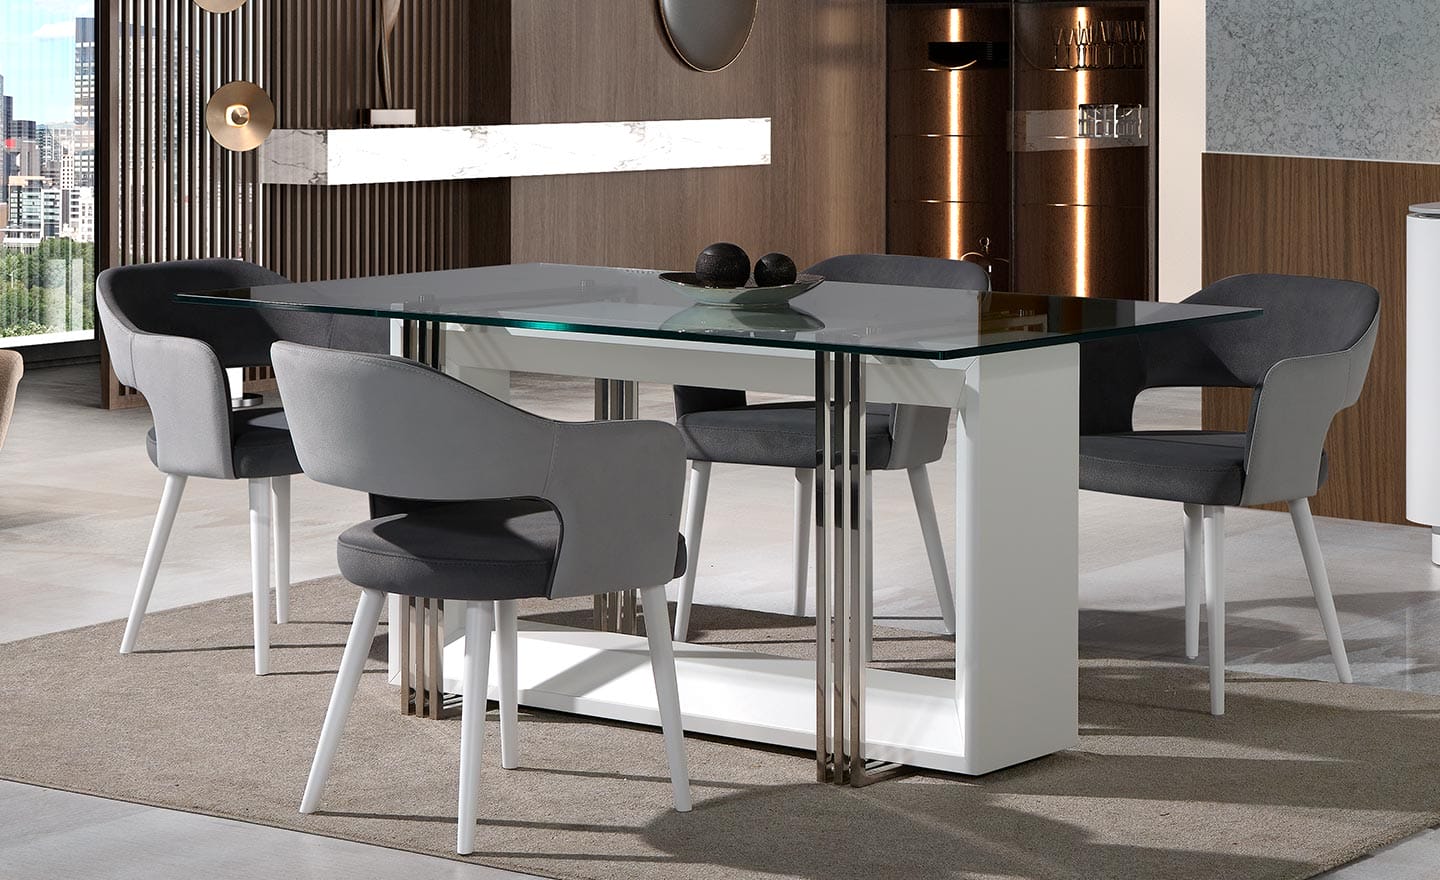 Sala de Jantar Eclipse - Mobiliário de Sala Moderna e Elegante com Mesa de Jantar e Aparador